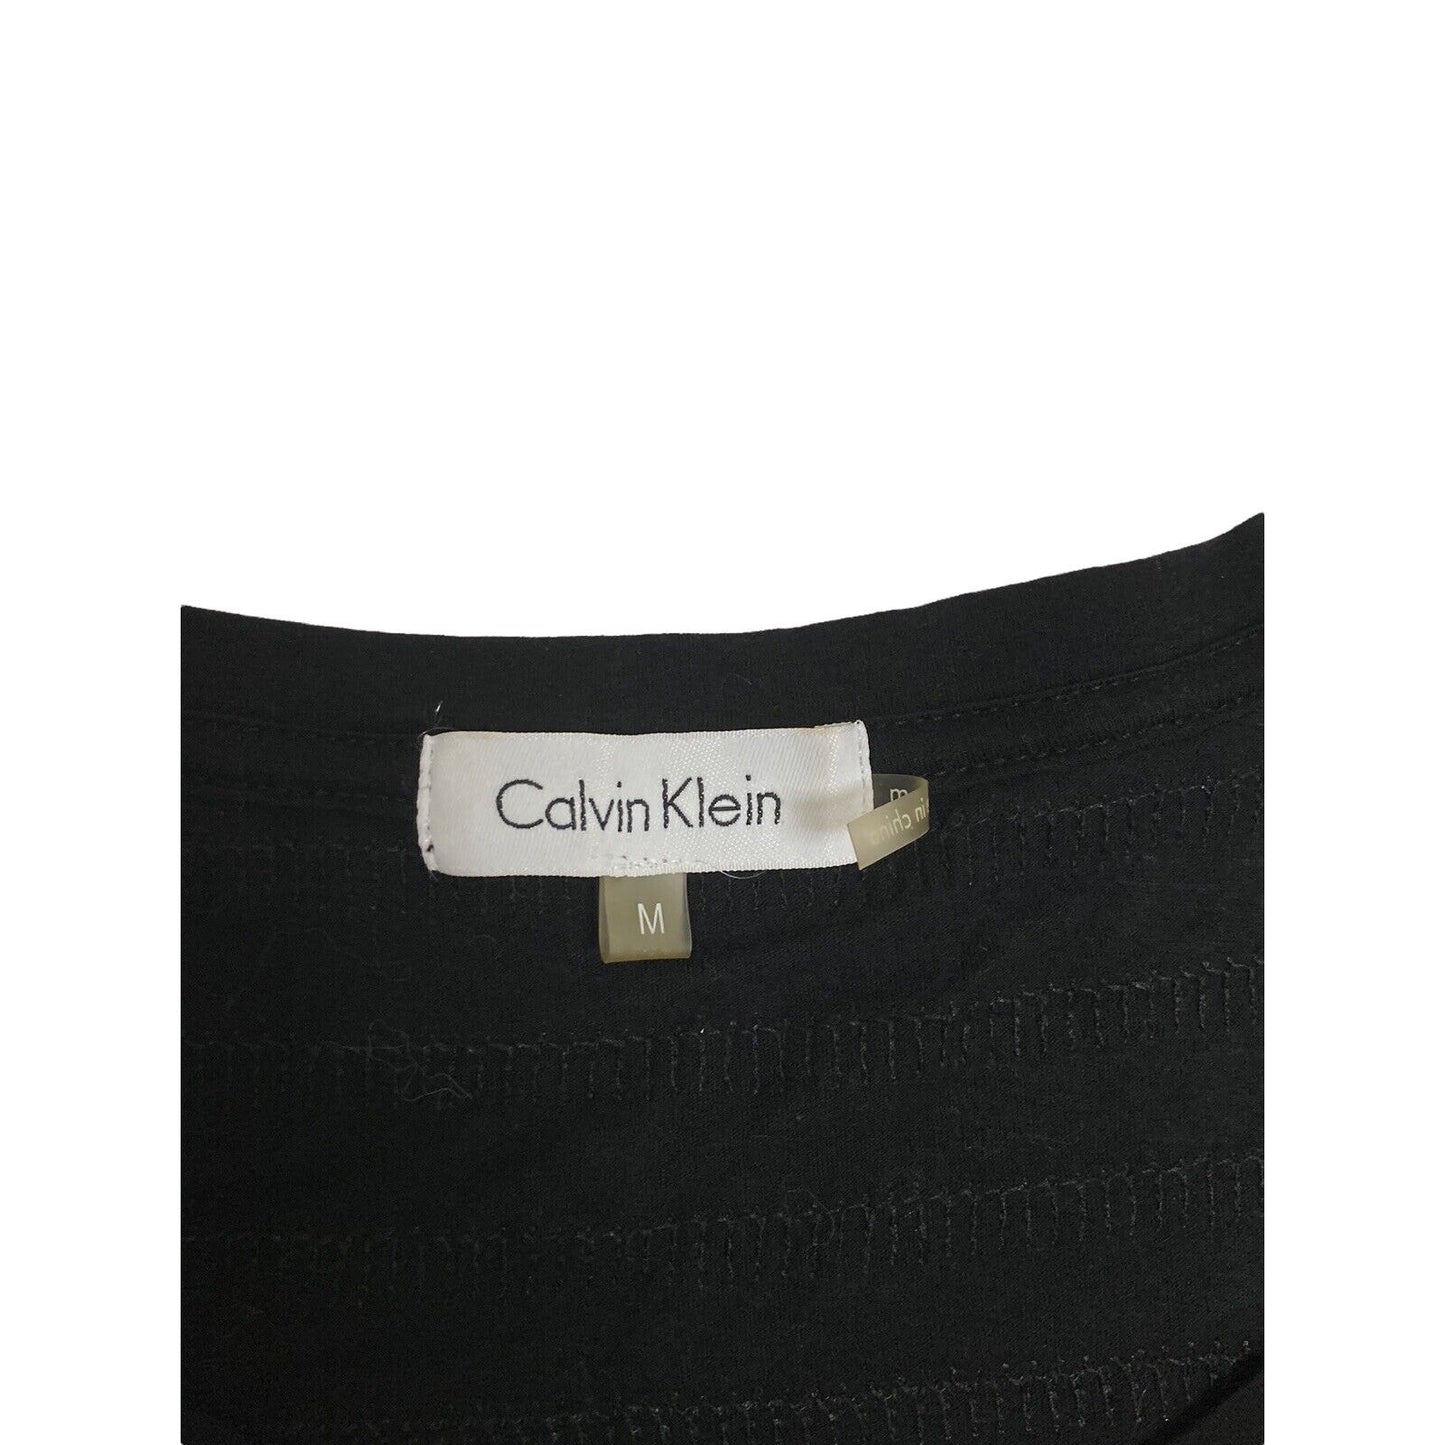 Calvin Klein Sparkly Sequin Striped Dressy Black T-Shirt Top Medium